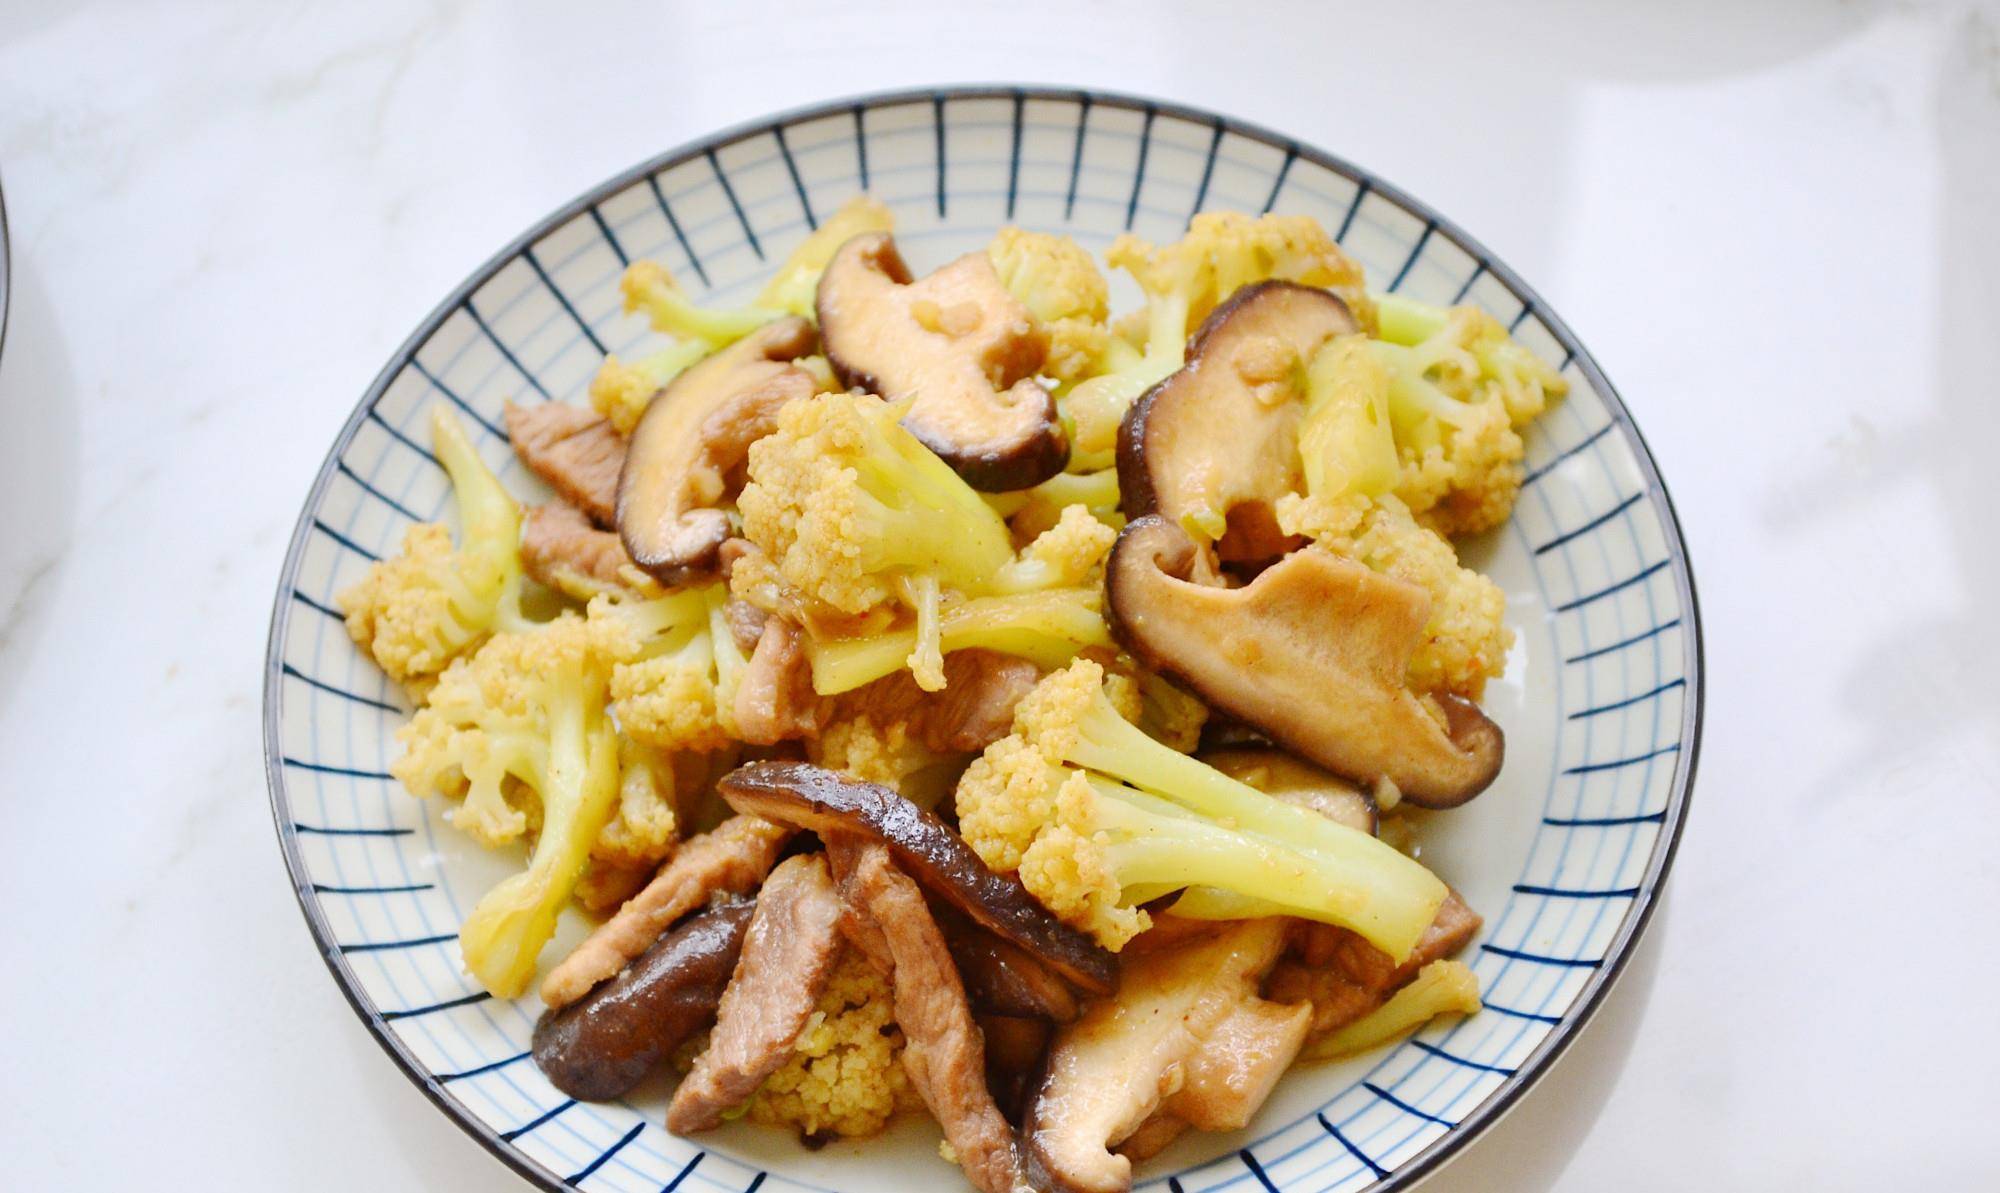 早餐:菜花香菇炒肉丝,娃娃菜黑米卷,水煮蛋,小米红枣粥